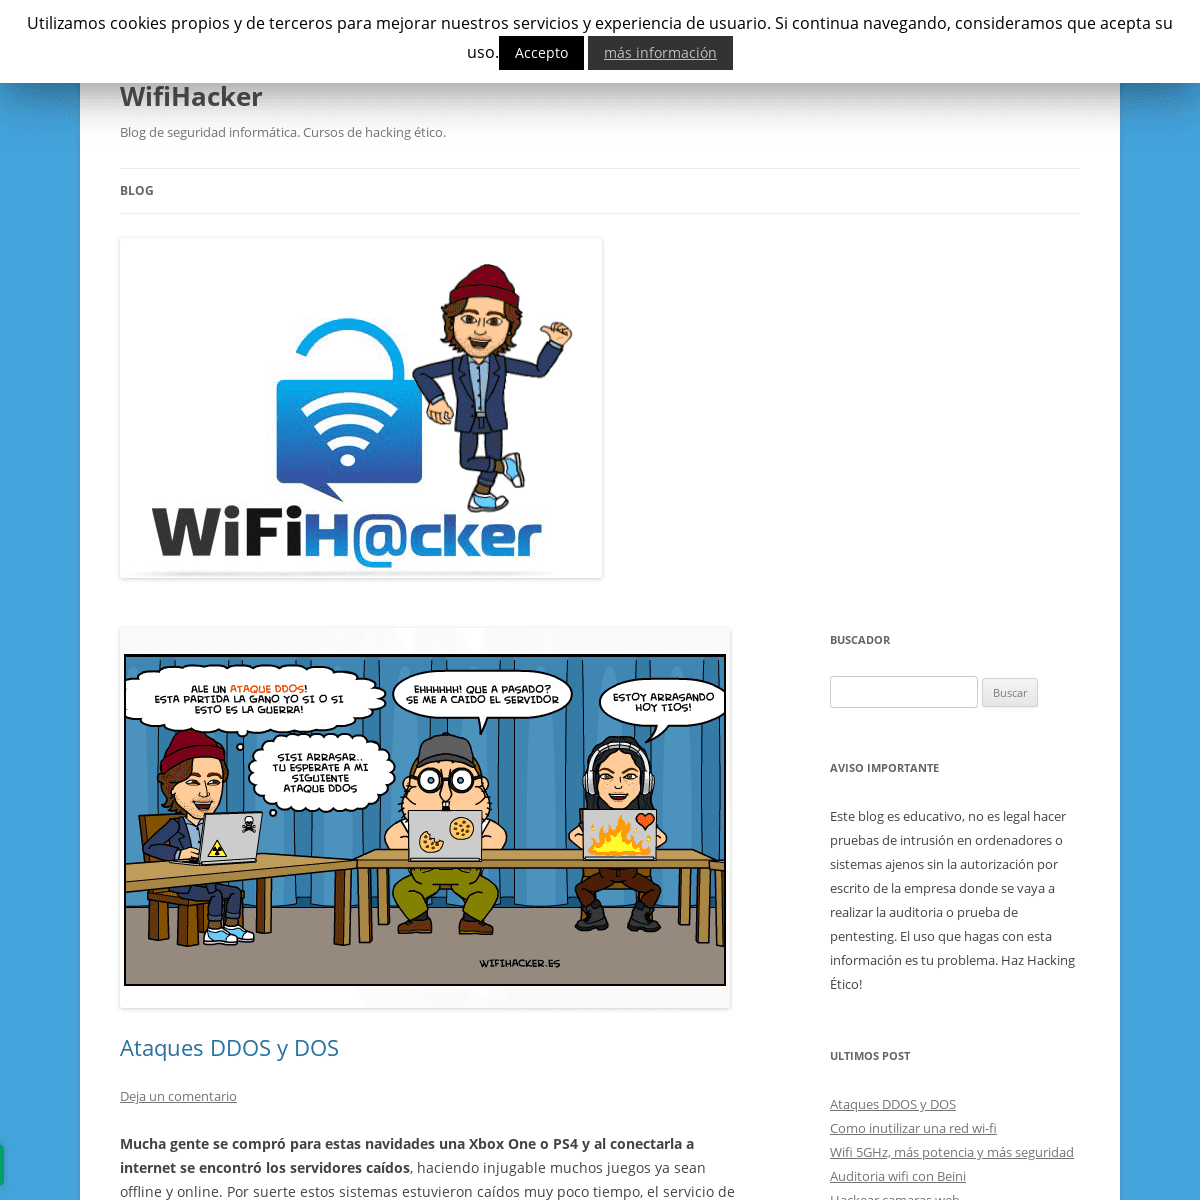 WifiHacker - Blog de seguridad informática. Cursos de hacking ético.